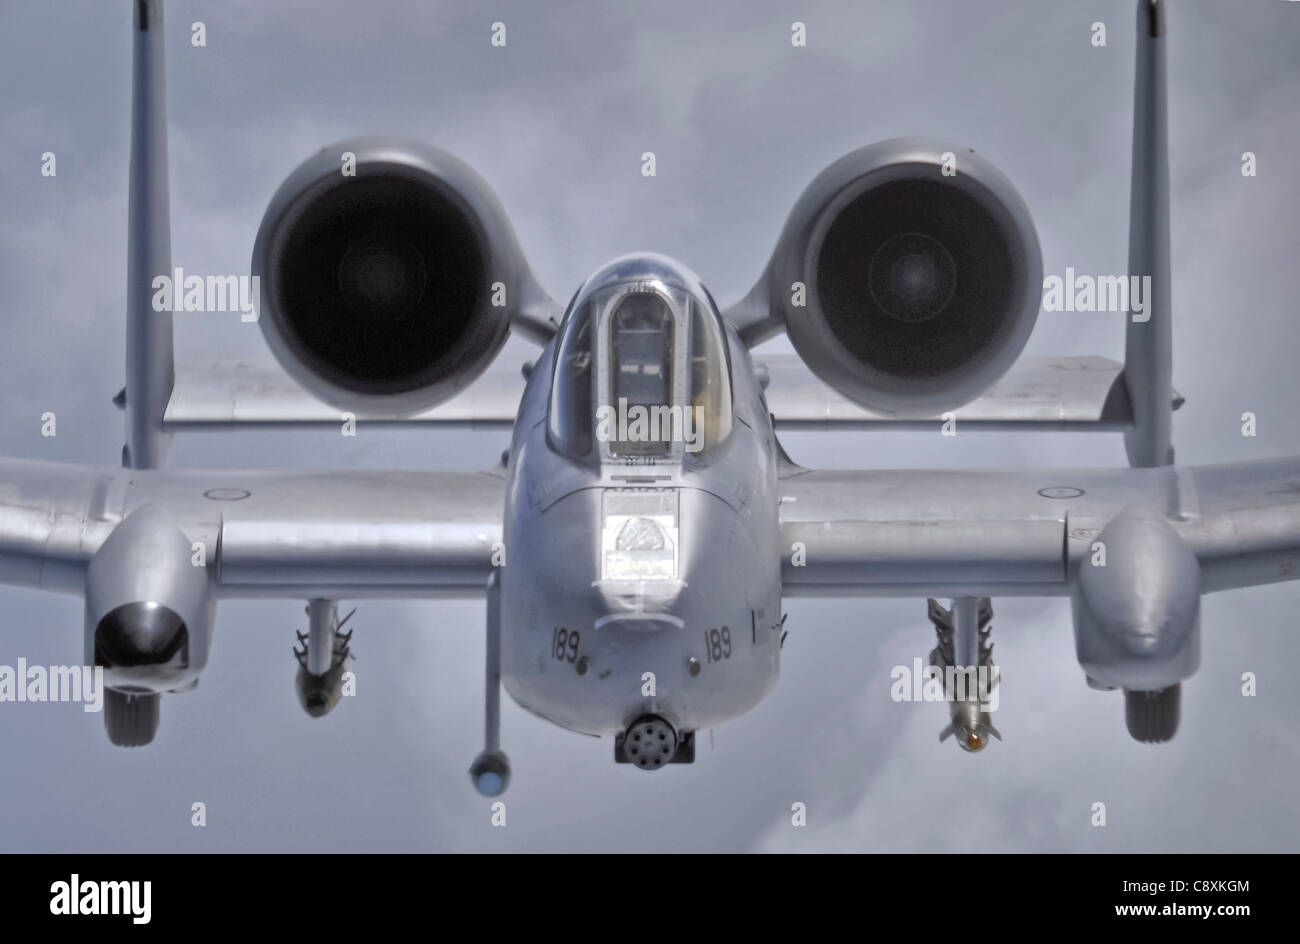 A-10 Thunderbolt IIs forniscono vicino-supporto aereo alle truppe di terra in Afghanistan e in Iraq. Foto Stock